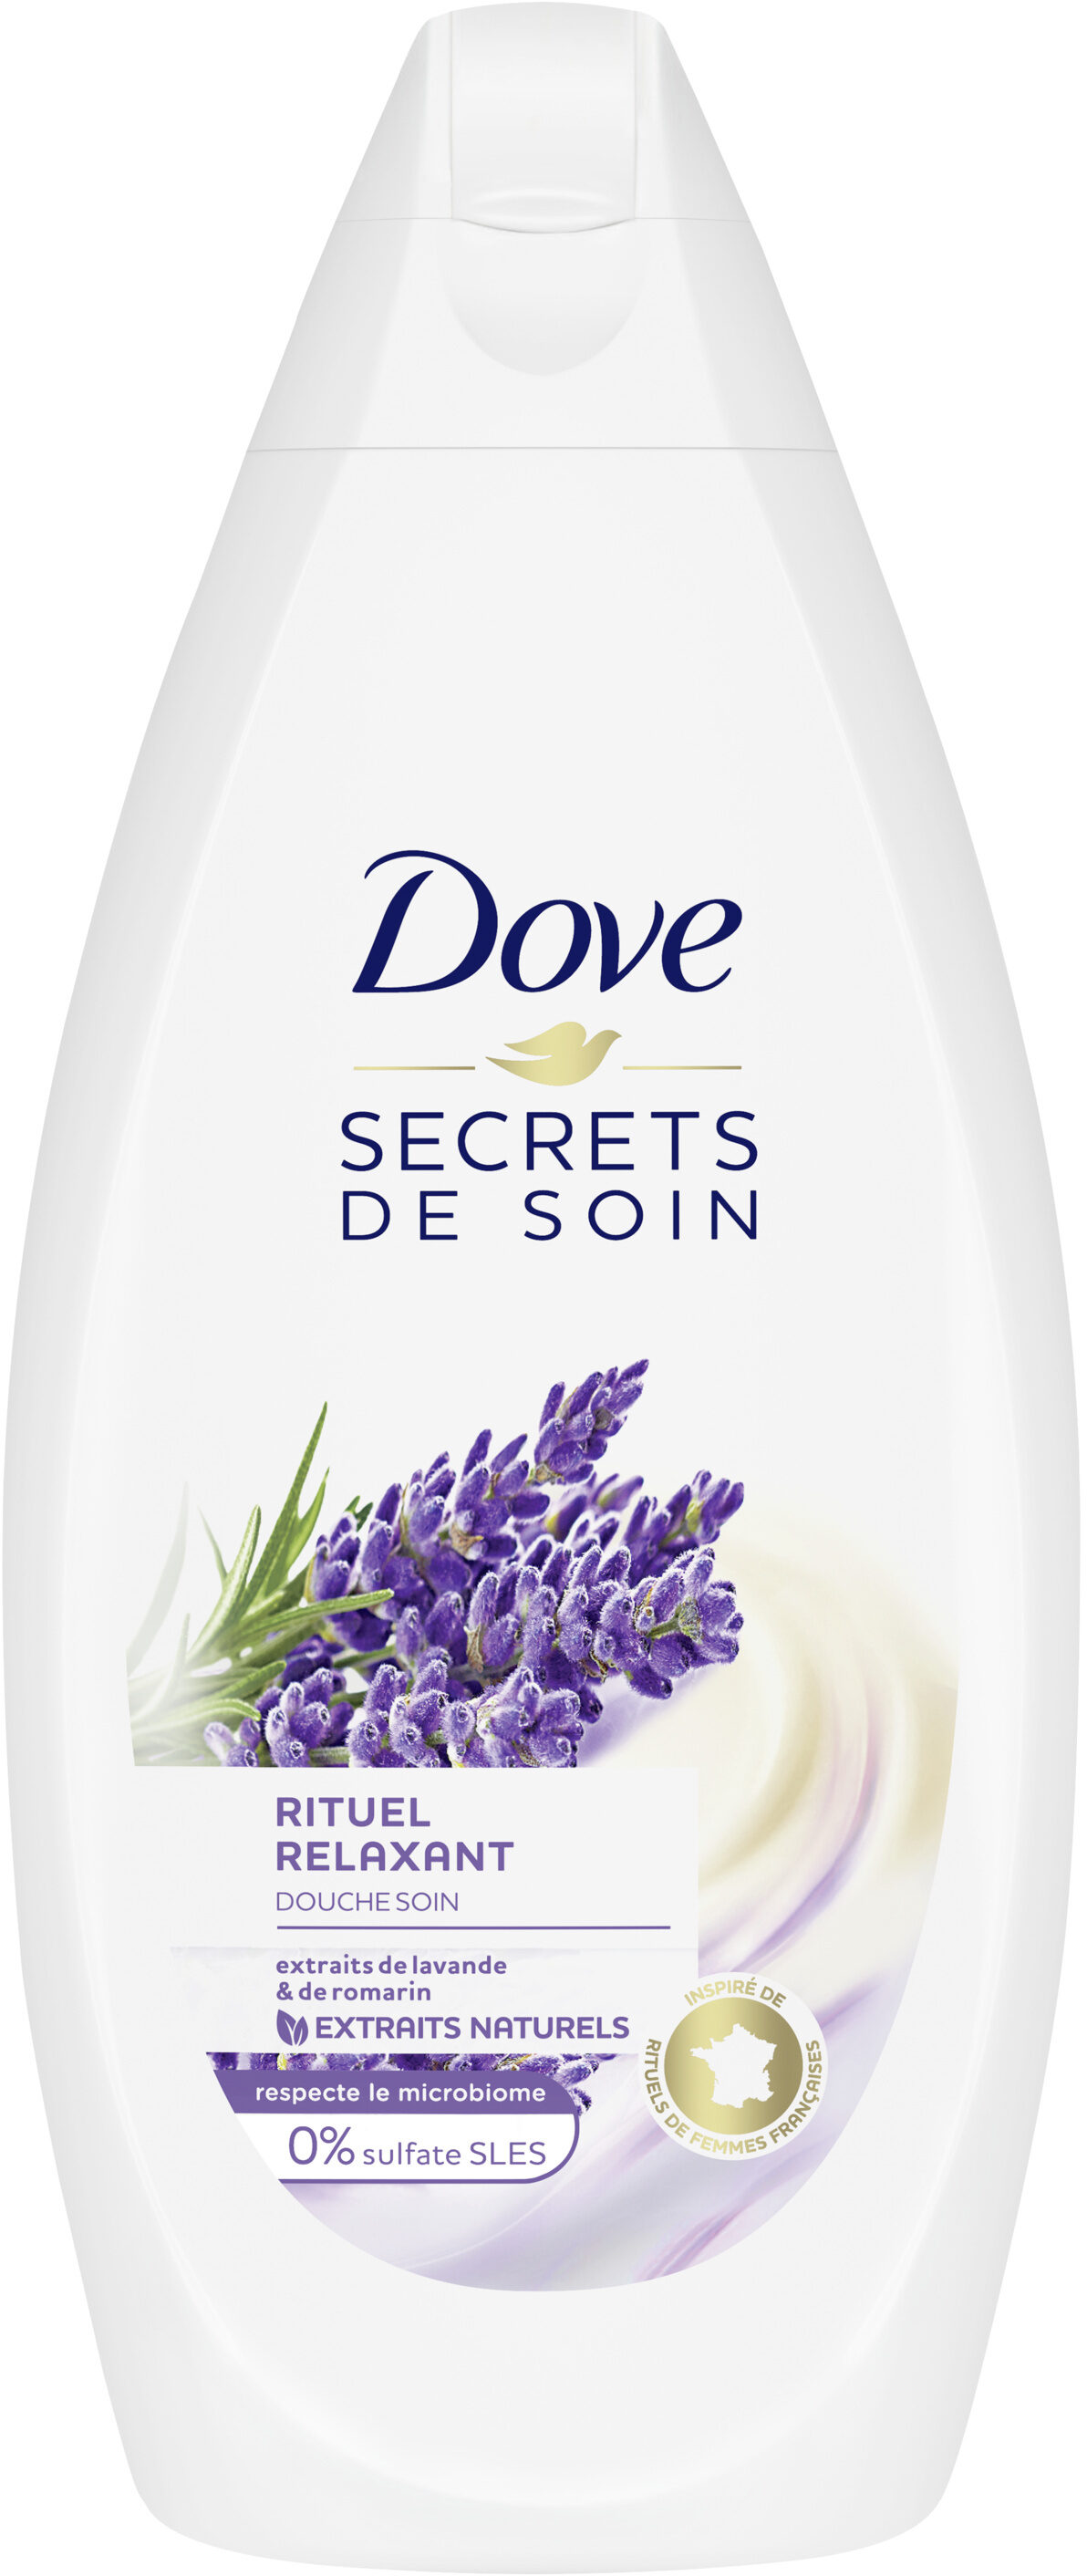 Dove Secrets de Soin Gel Douche Lavande - Product - fr